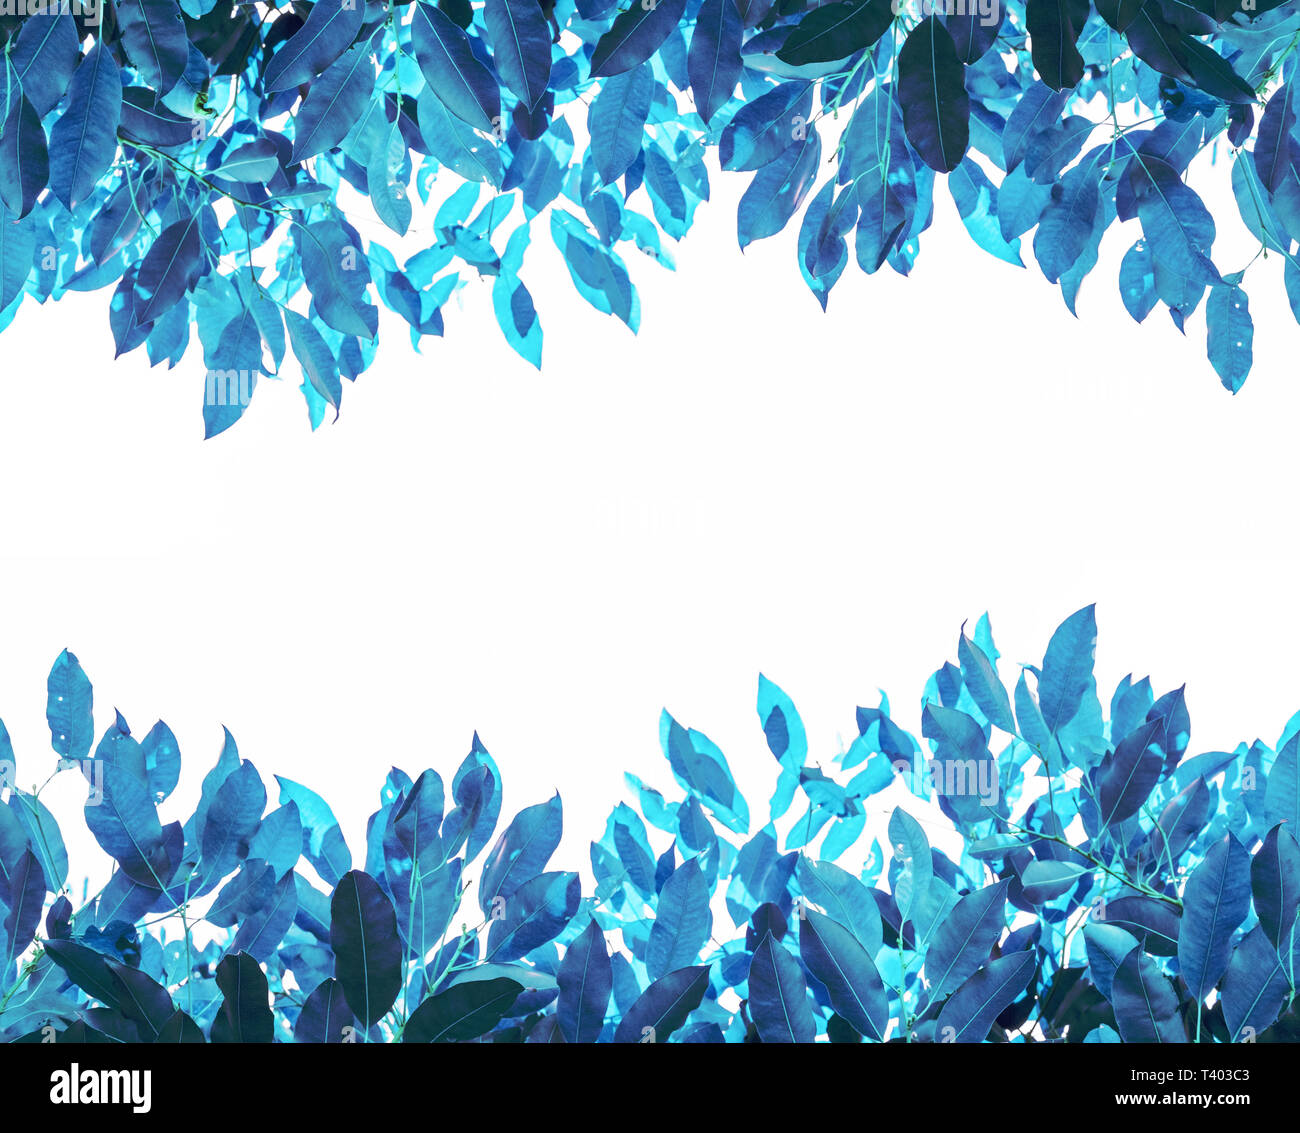 Les feuilles colorées, bleu sur fond blanc Banque D'Images